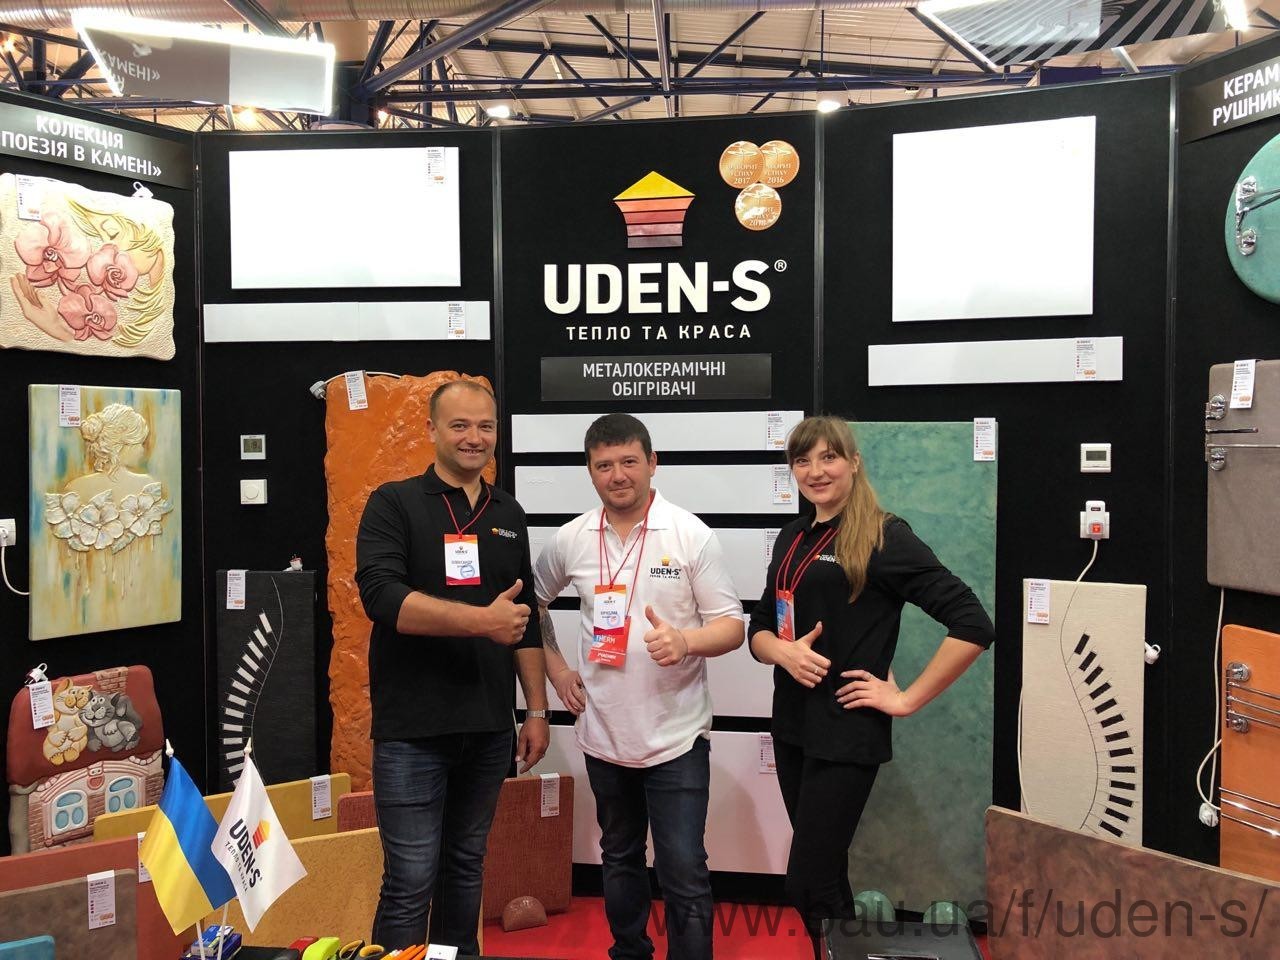 Посетители и участники AgroExpo-2019 смогут приобрести обогреватели UDEN-S со скидкой!